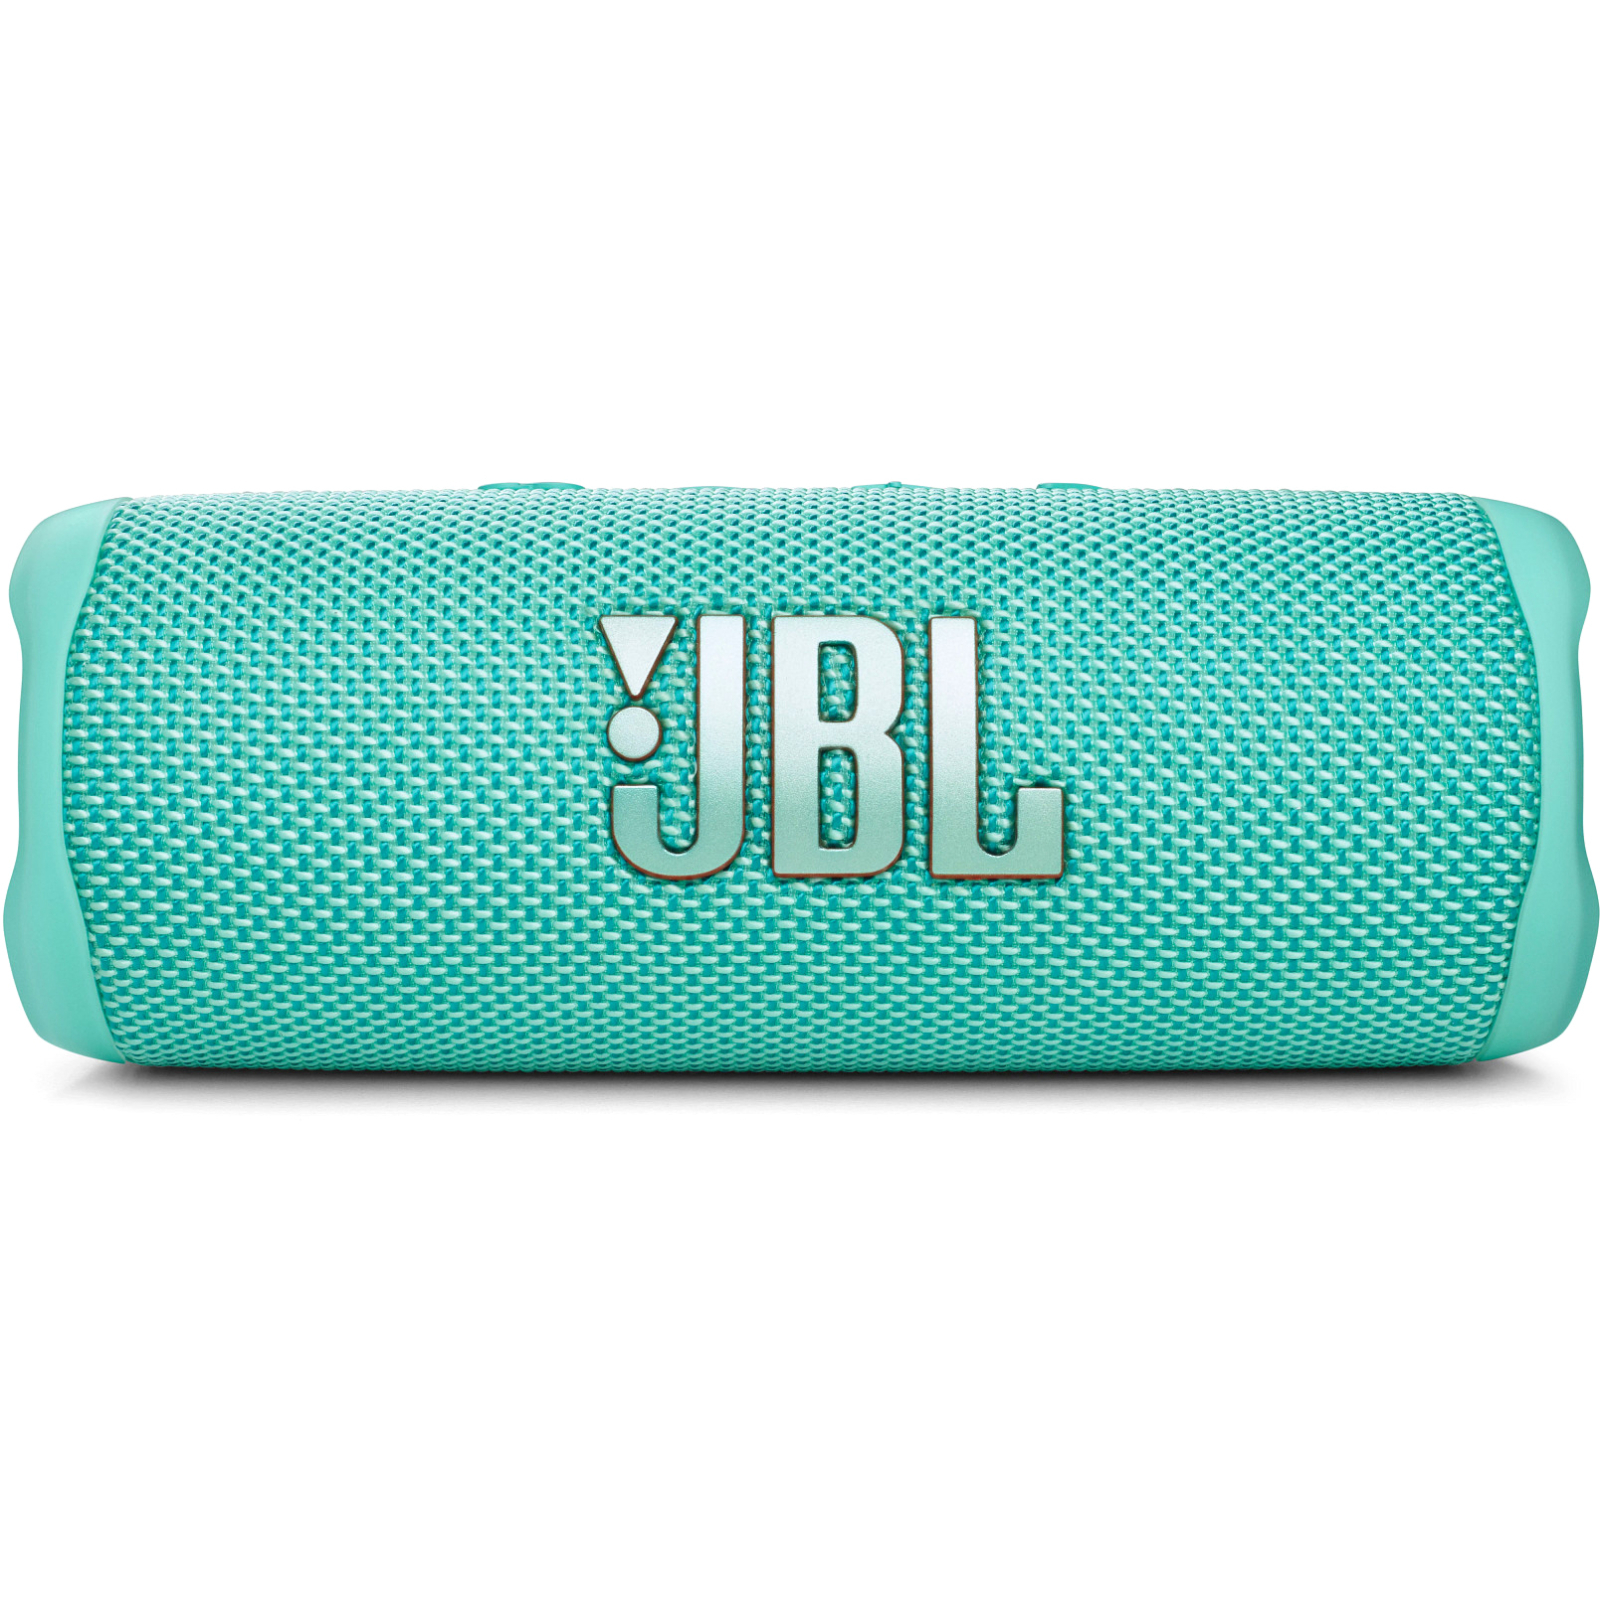 Акустическая система JBL Flip 6 Grey (JBLFLIP6GREY)